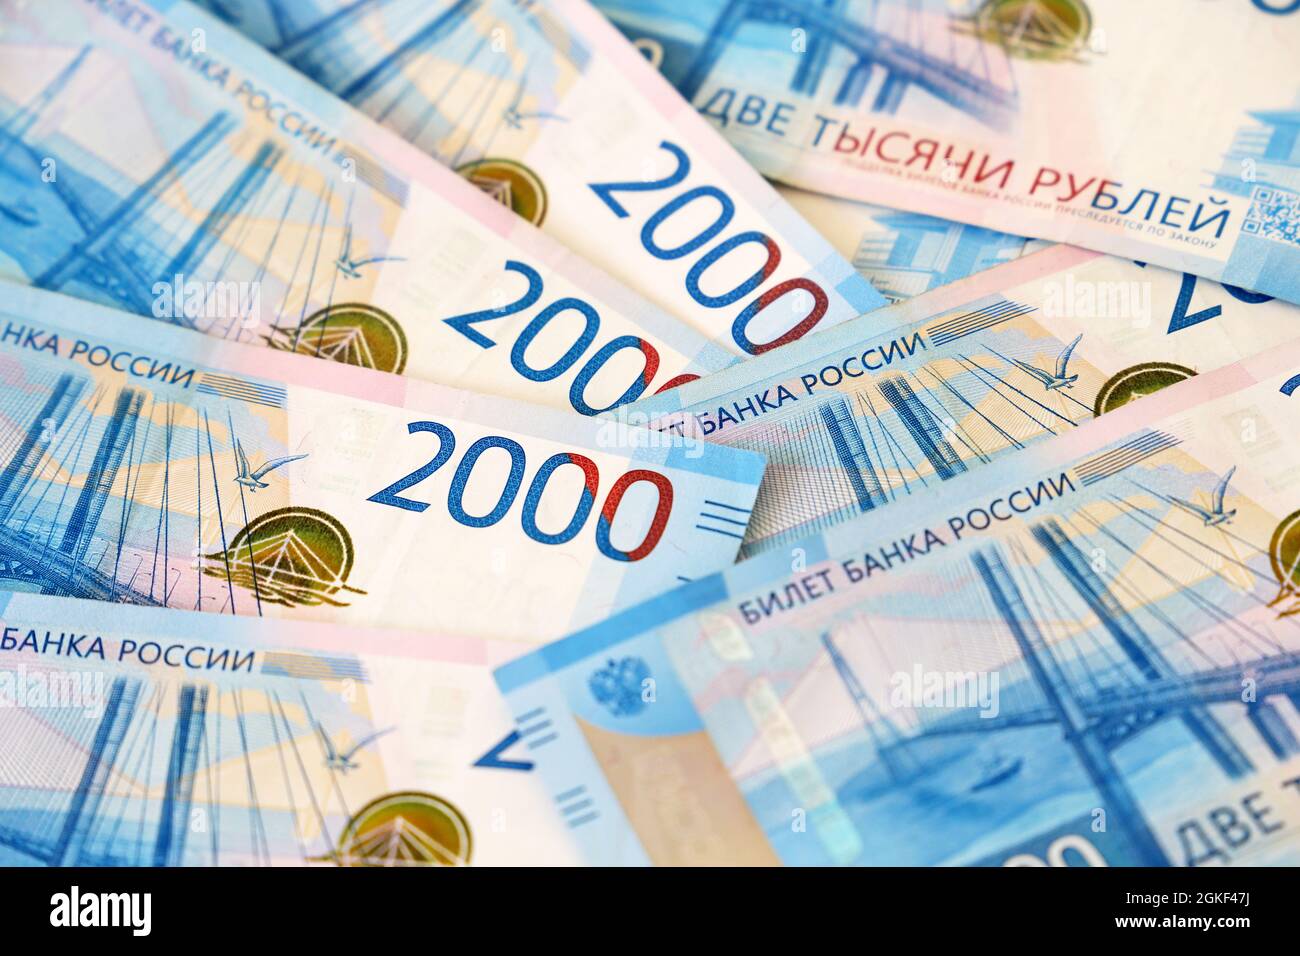 Billets russes de 2000 roubles. Contexte de l'économie de la Russie Banque D'Images